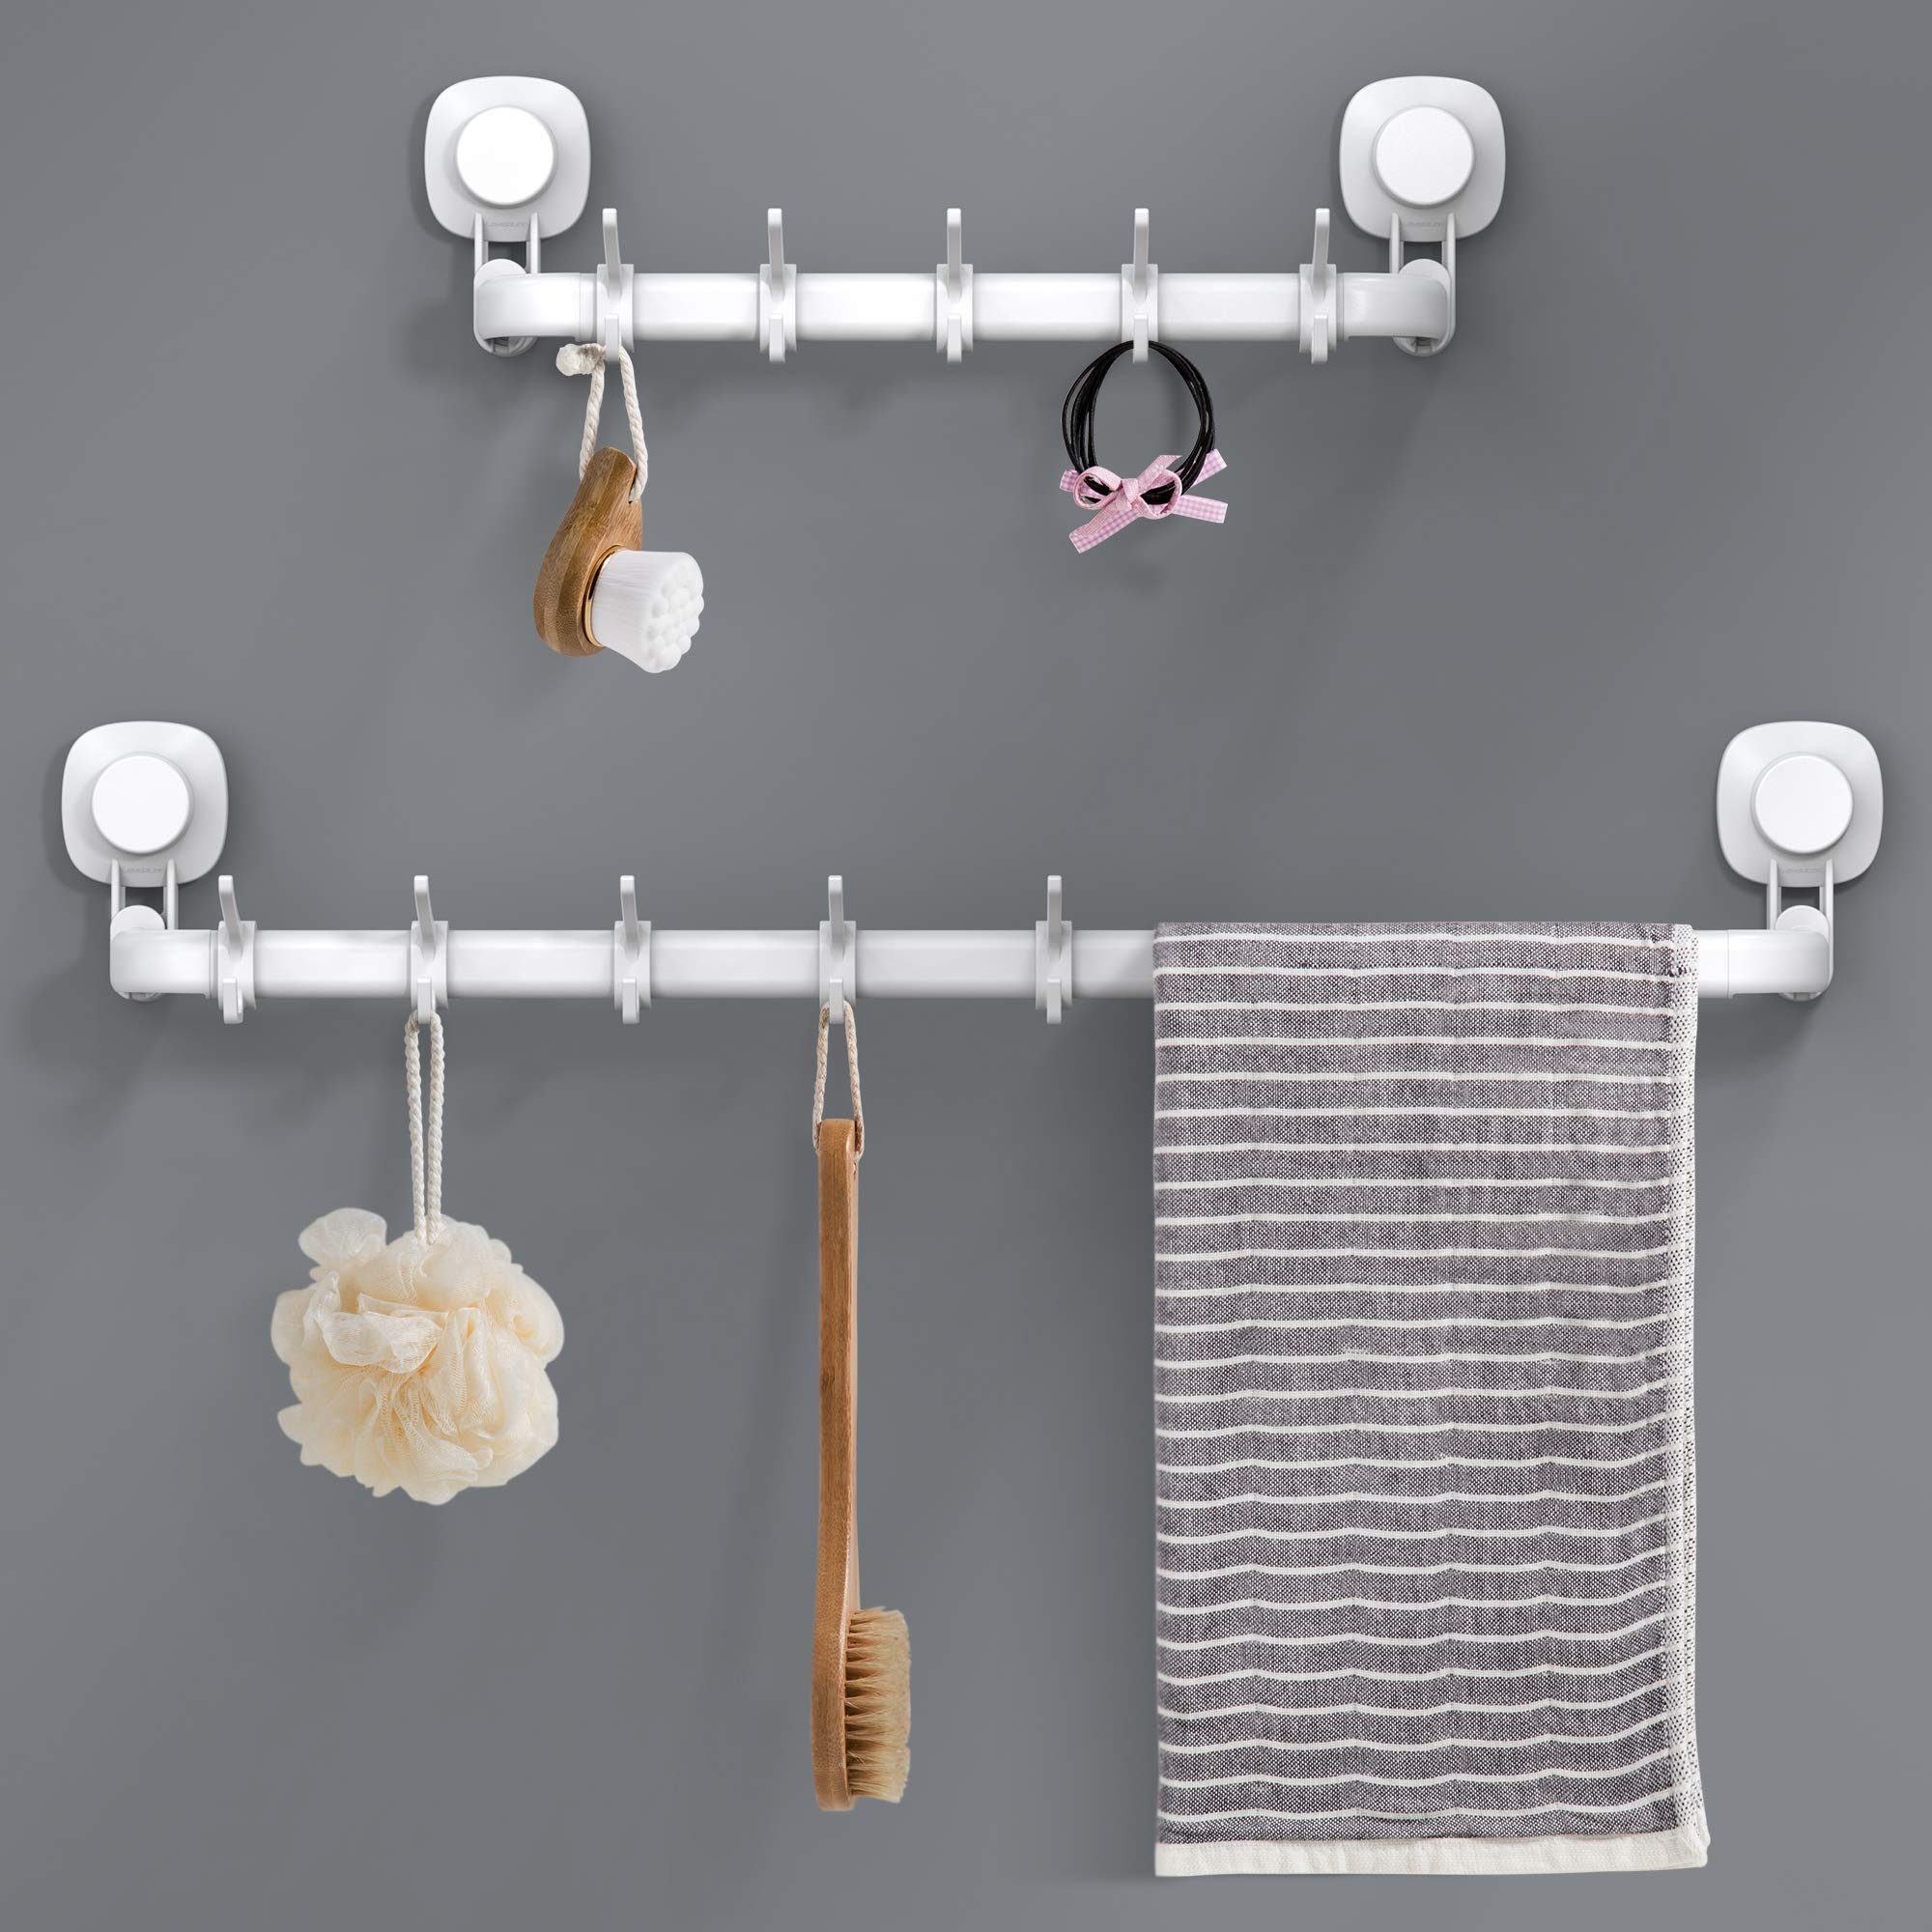 Luxear Verstellbarer Handtuchhalter mit Saugnapf ohne Bohren, 64cm / 36cm Handtuchstange Wand mit 5 abnehmbaren Handtuchhaken, Max 10 KG Belastbarkeit, wiederverwendbarer Badetuchhalter für Bad Küche